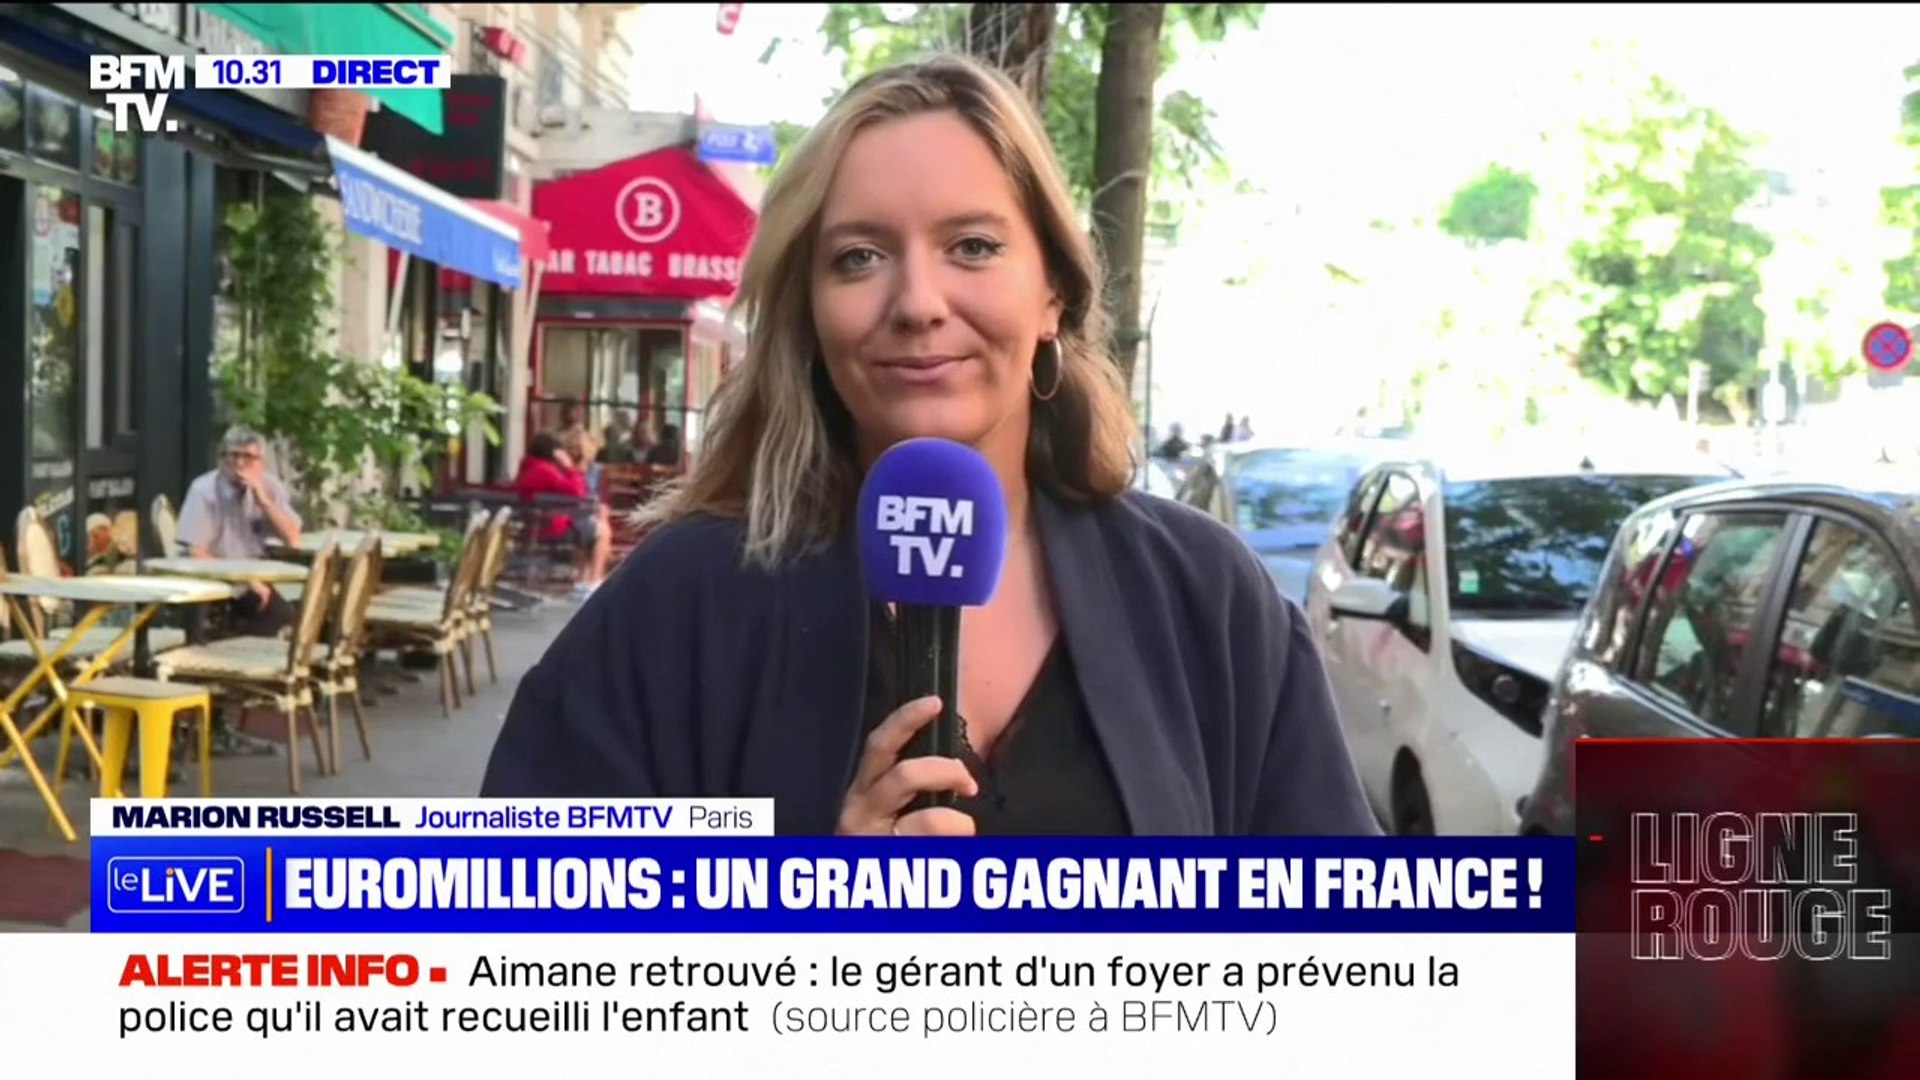 Euromillions: le jackpot de 109 millions d'euros remporté en France, un  record cette année - Vidéo Dailymotion